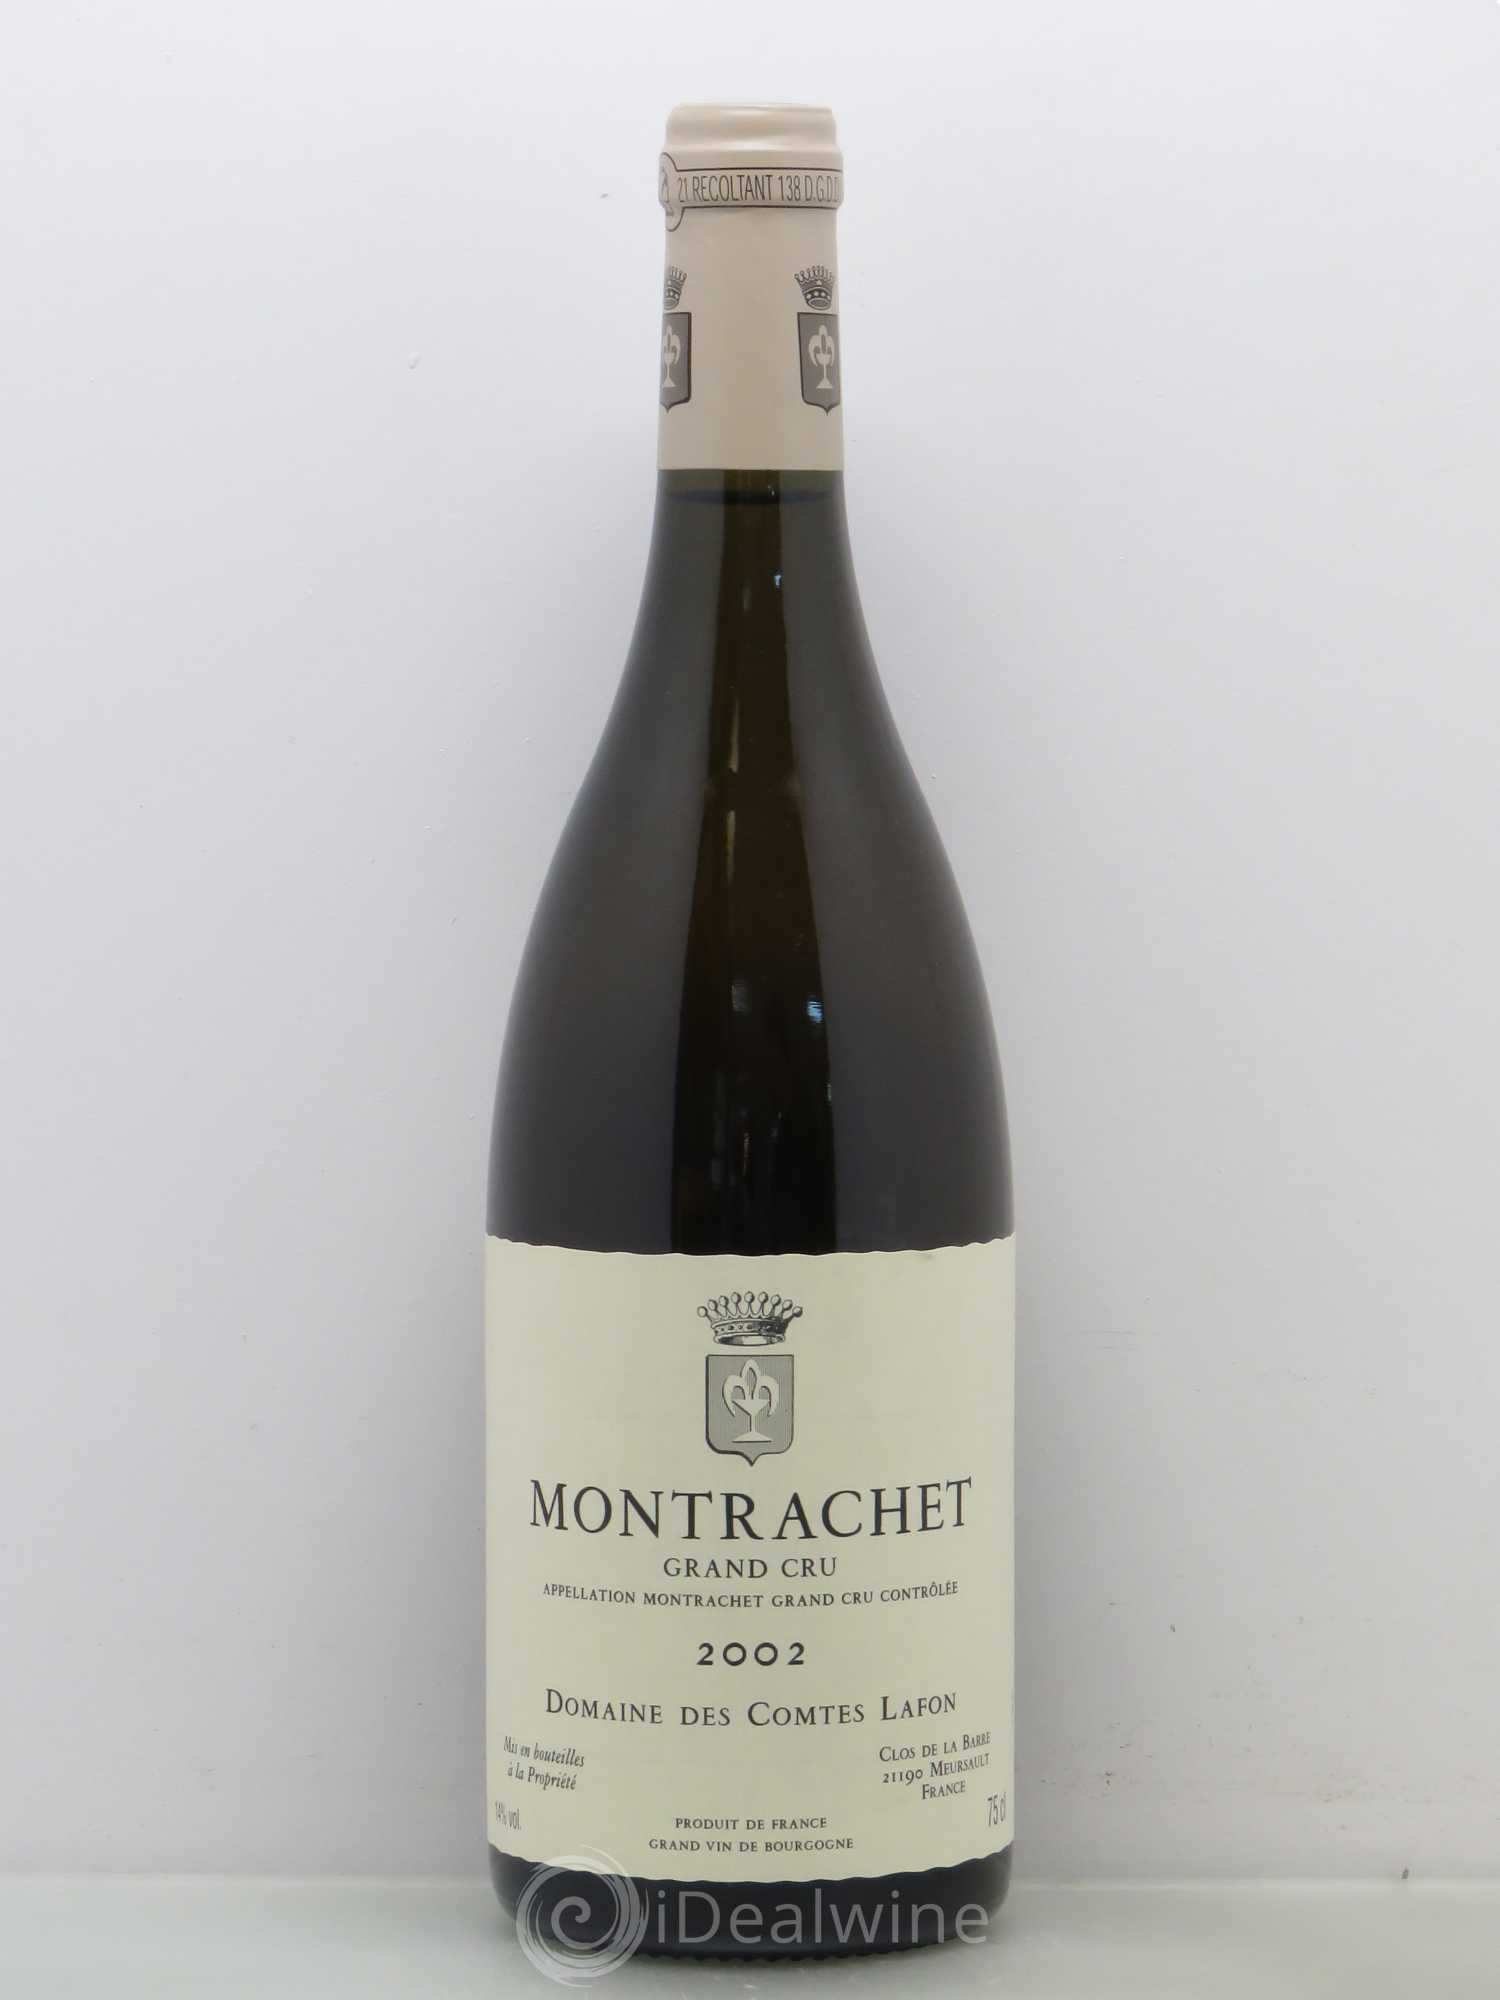 Acheter Montrachet Grand Cru Domaine des Comtes Lafon 2002 (lot: 3673)